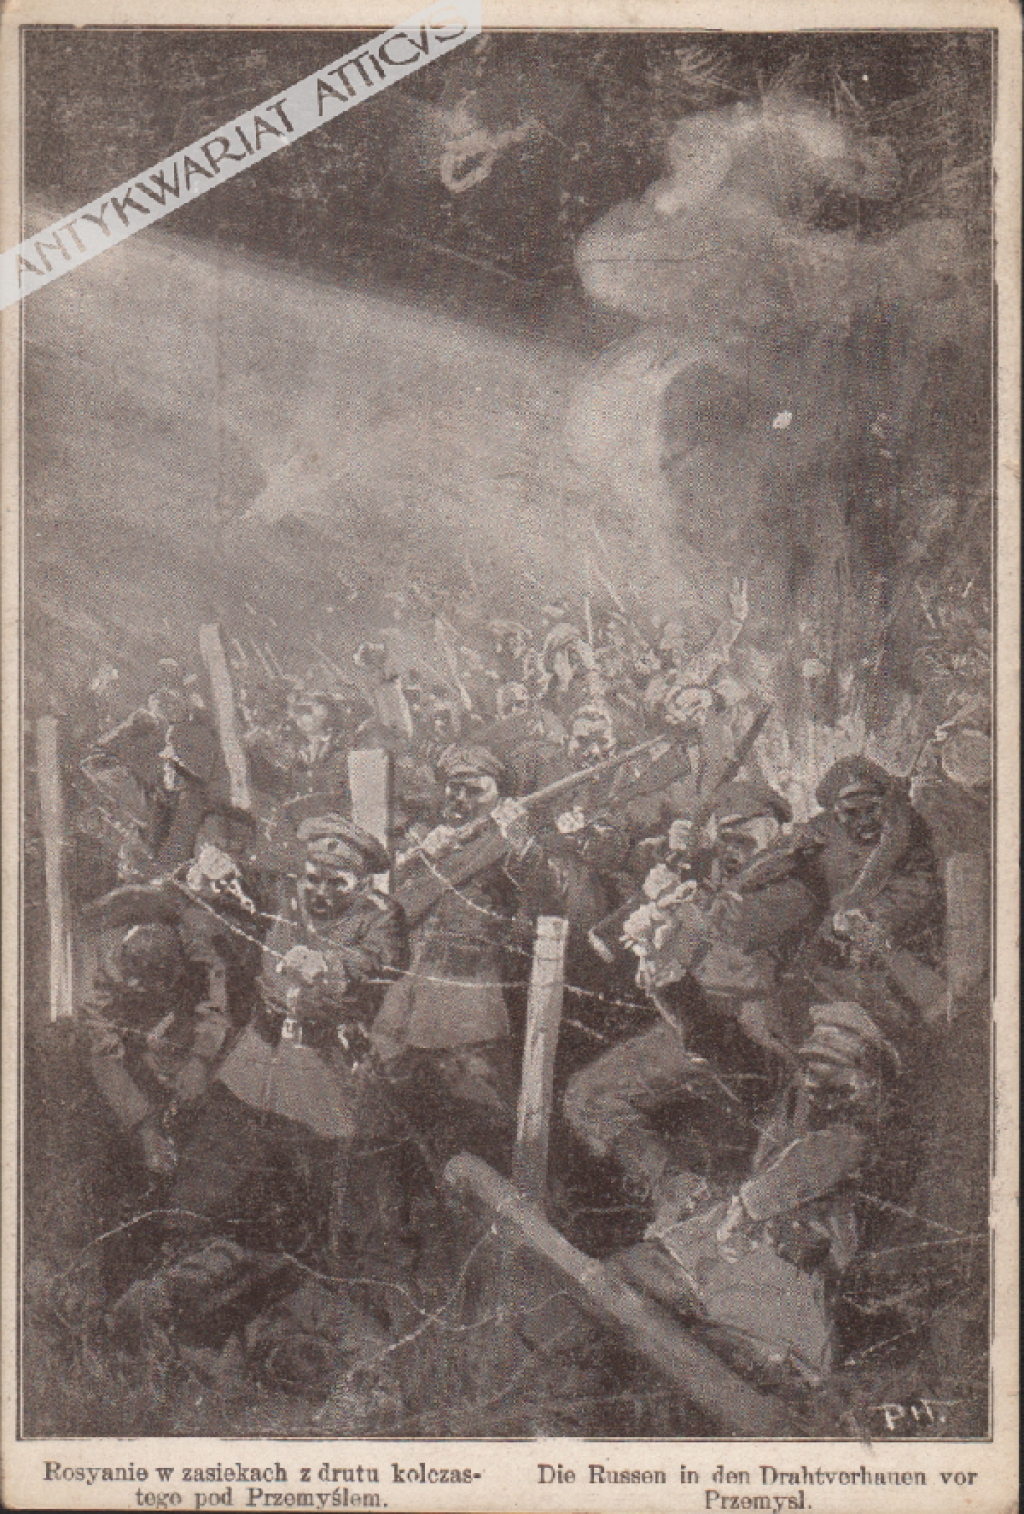 [pocztówka, ok. 1915] Rosyanie w zasiekach z drutu kolczastego pod Przemyślem Die Russen in den Drahtverhauen vor Przemysl